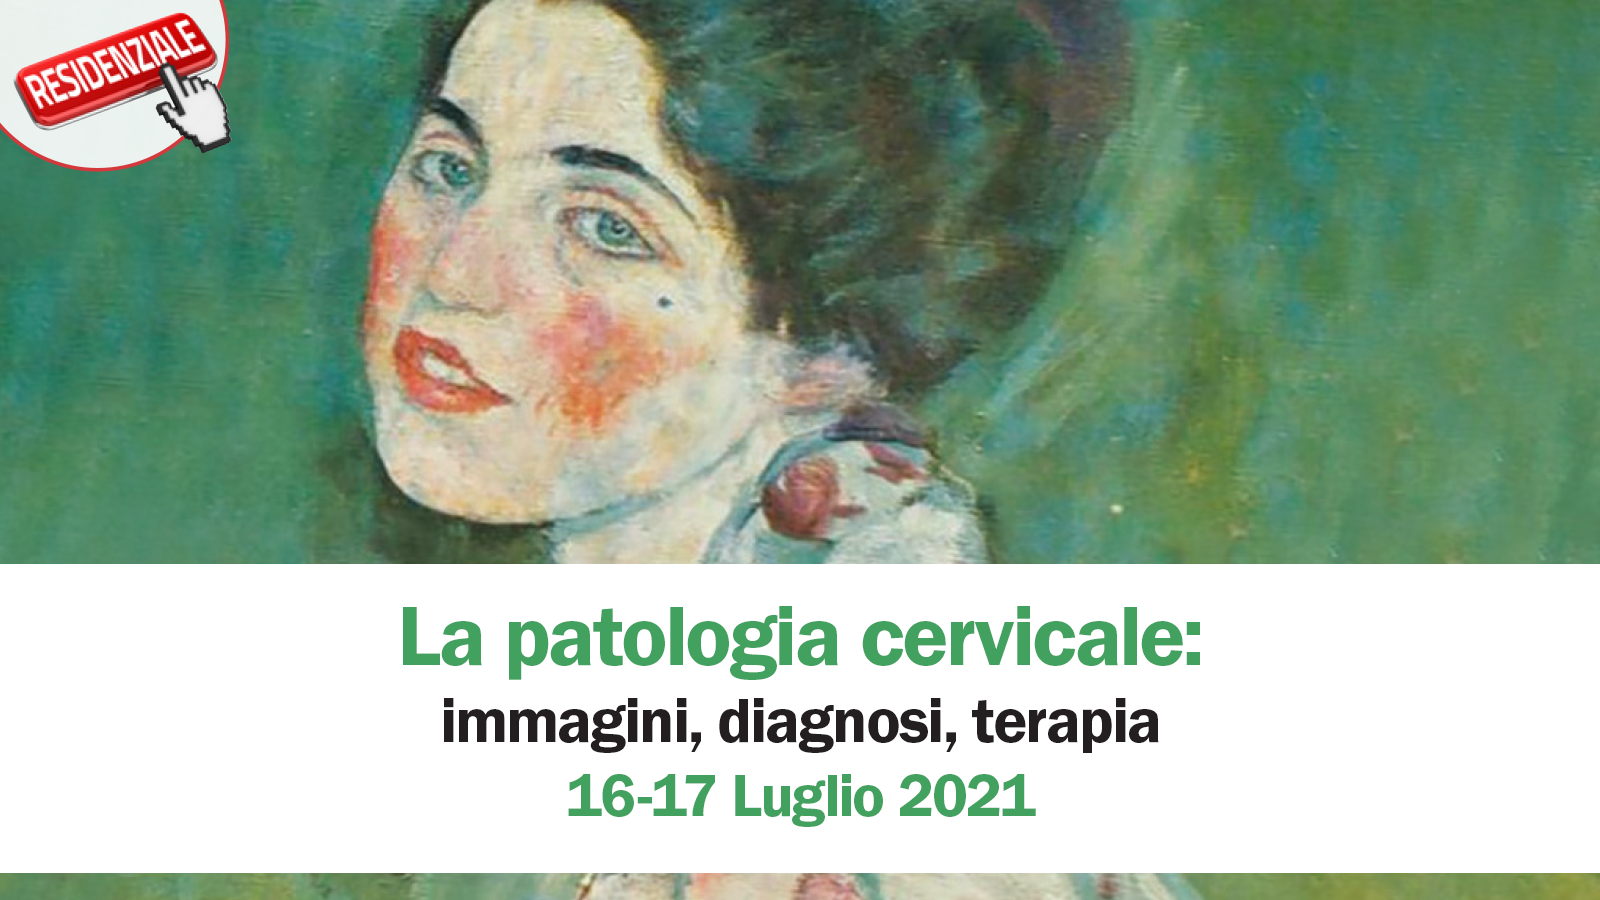 La patologia cervicale: immagini, diagnosi, terapia